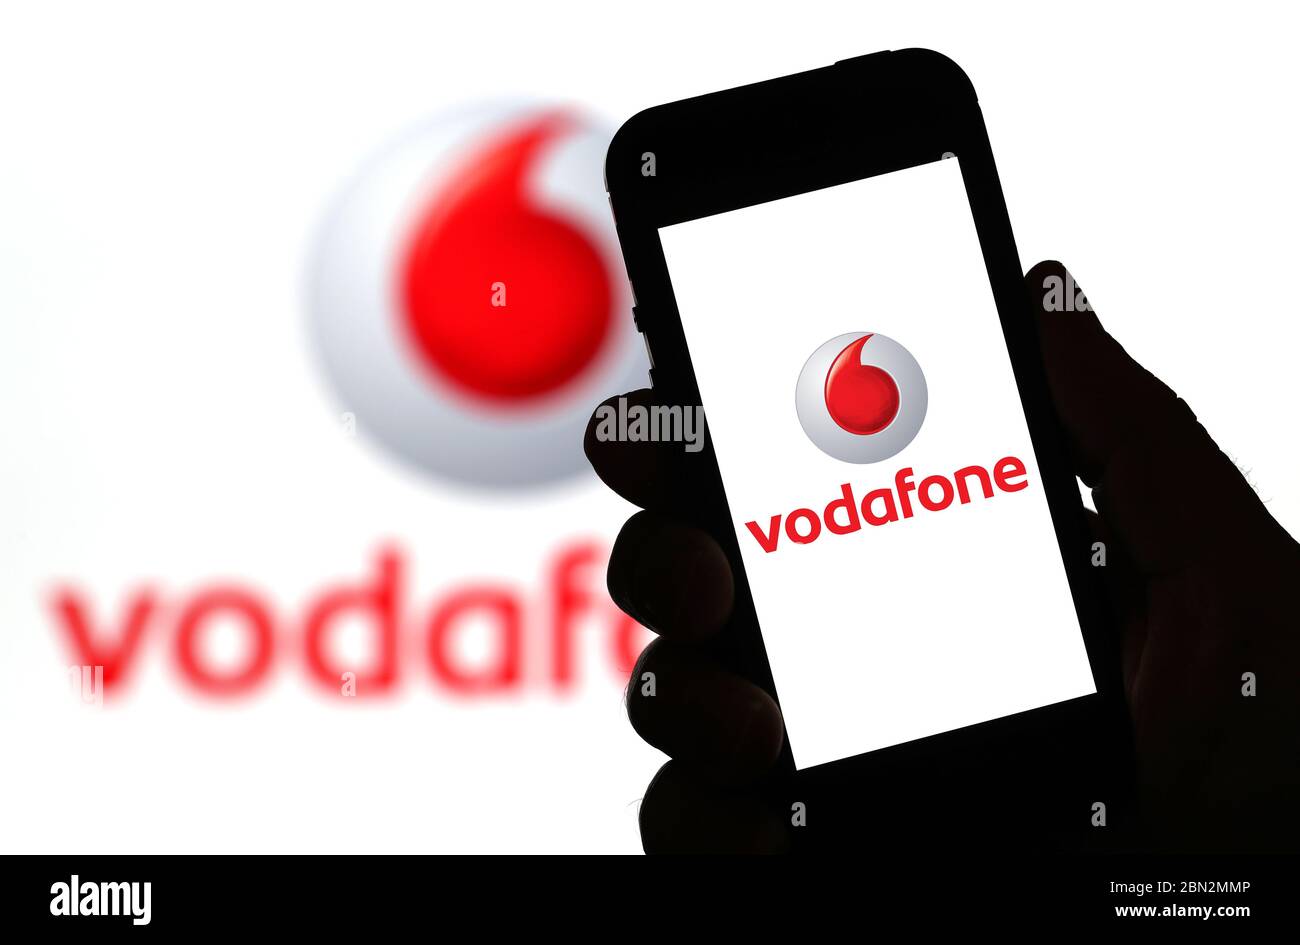 Vodafone-Mobilfunknetz-Logo auf einem Mobiltelefon (nur redaktionelle Verwendung) Stockfoto